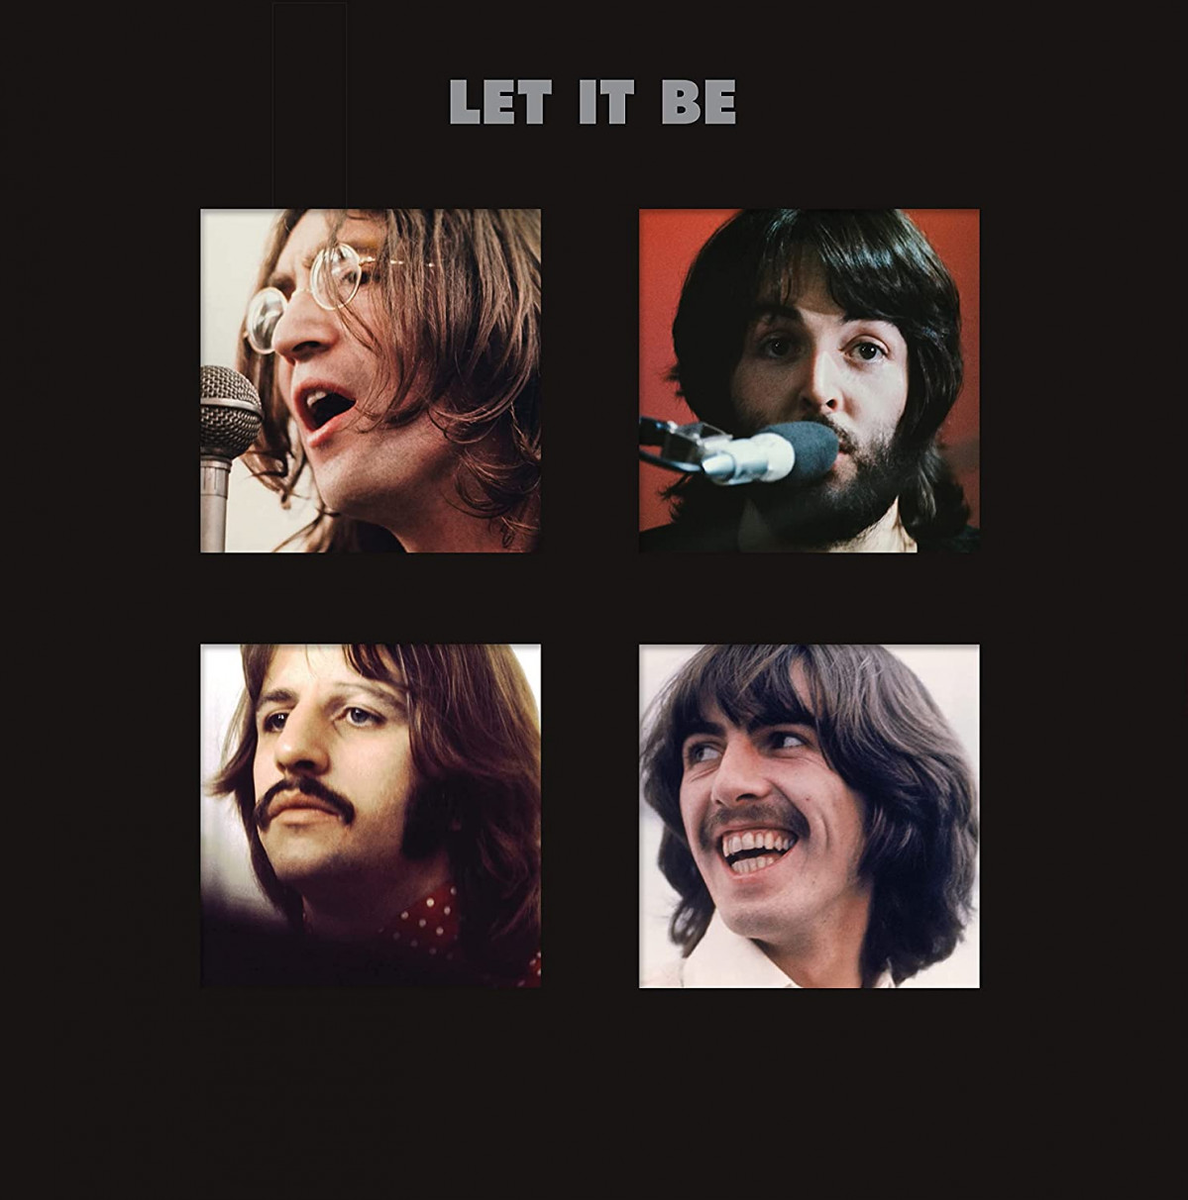 Песня лет ит би. The Beatles Let it be пластинка. The Beatles Let it be CD 2009. The Beatles Let it be обложка альбома. Let it be (Beatles album).